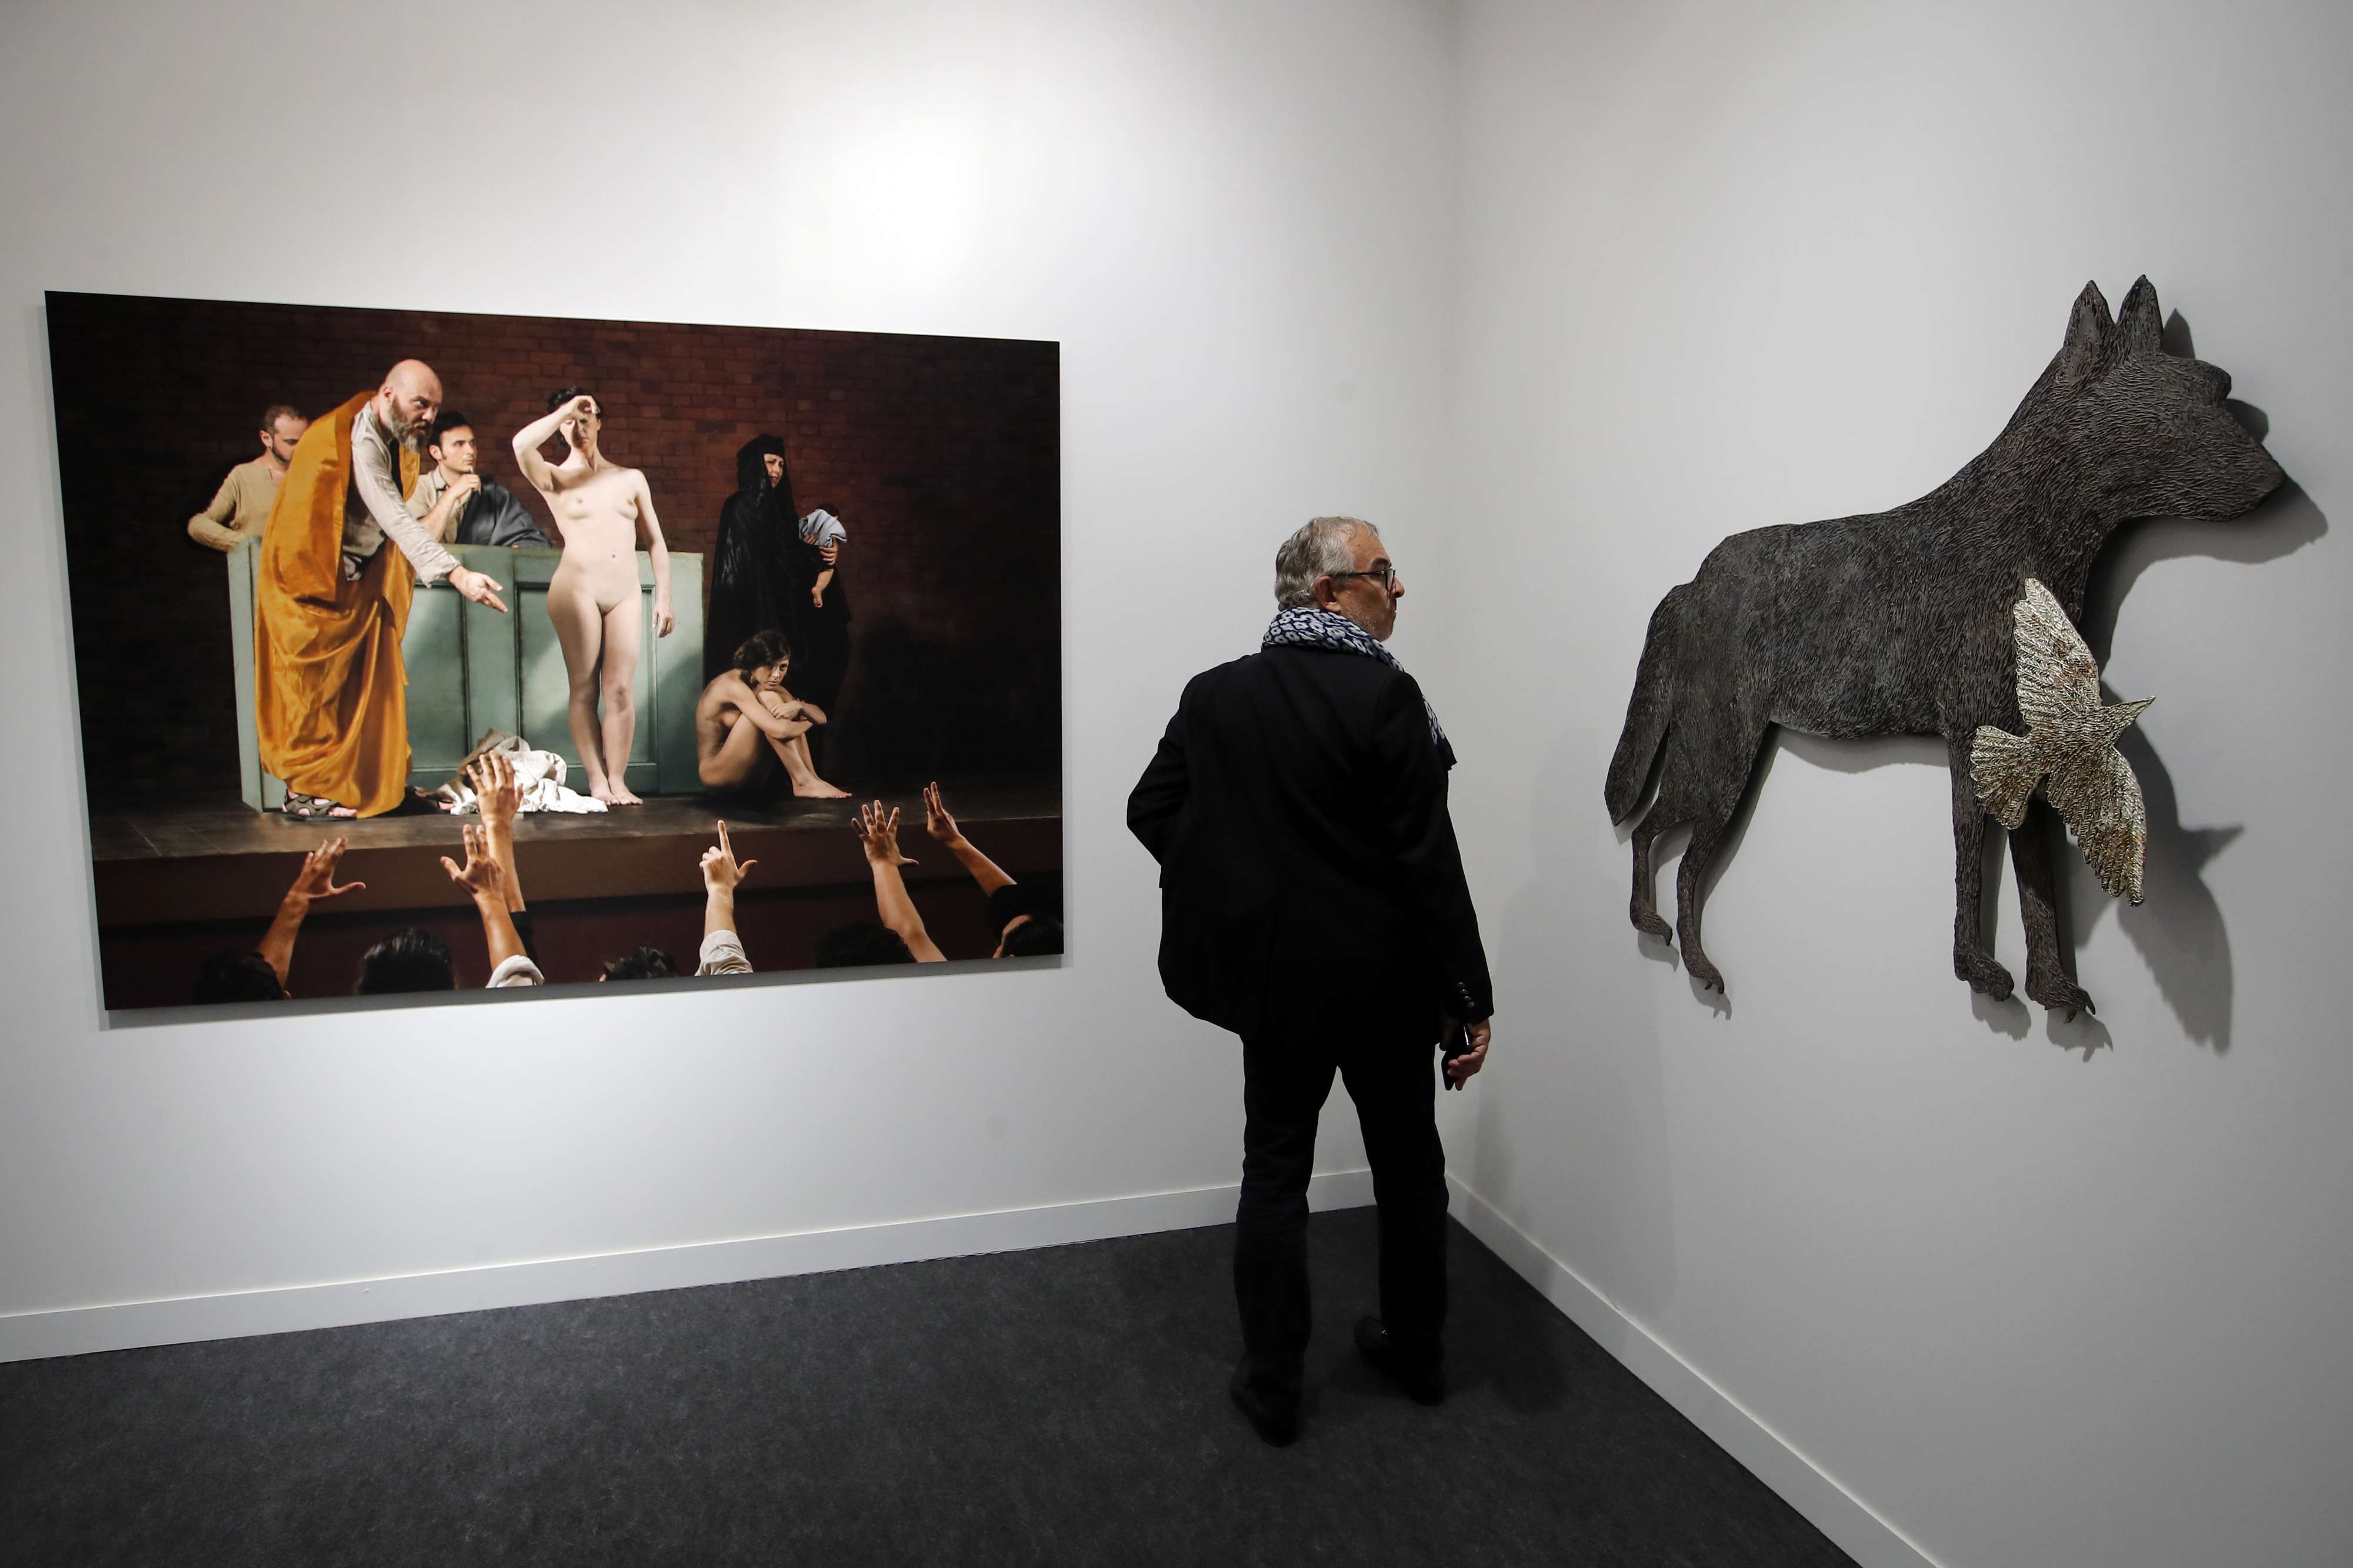 زائر يقف بين لوحة للفنان المصري معتز نصر (يسار) وعمل لفنان ألماني (يمين)